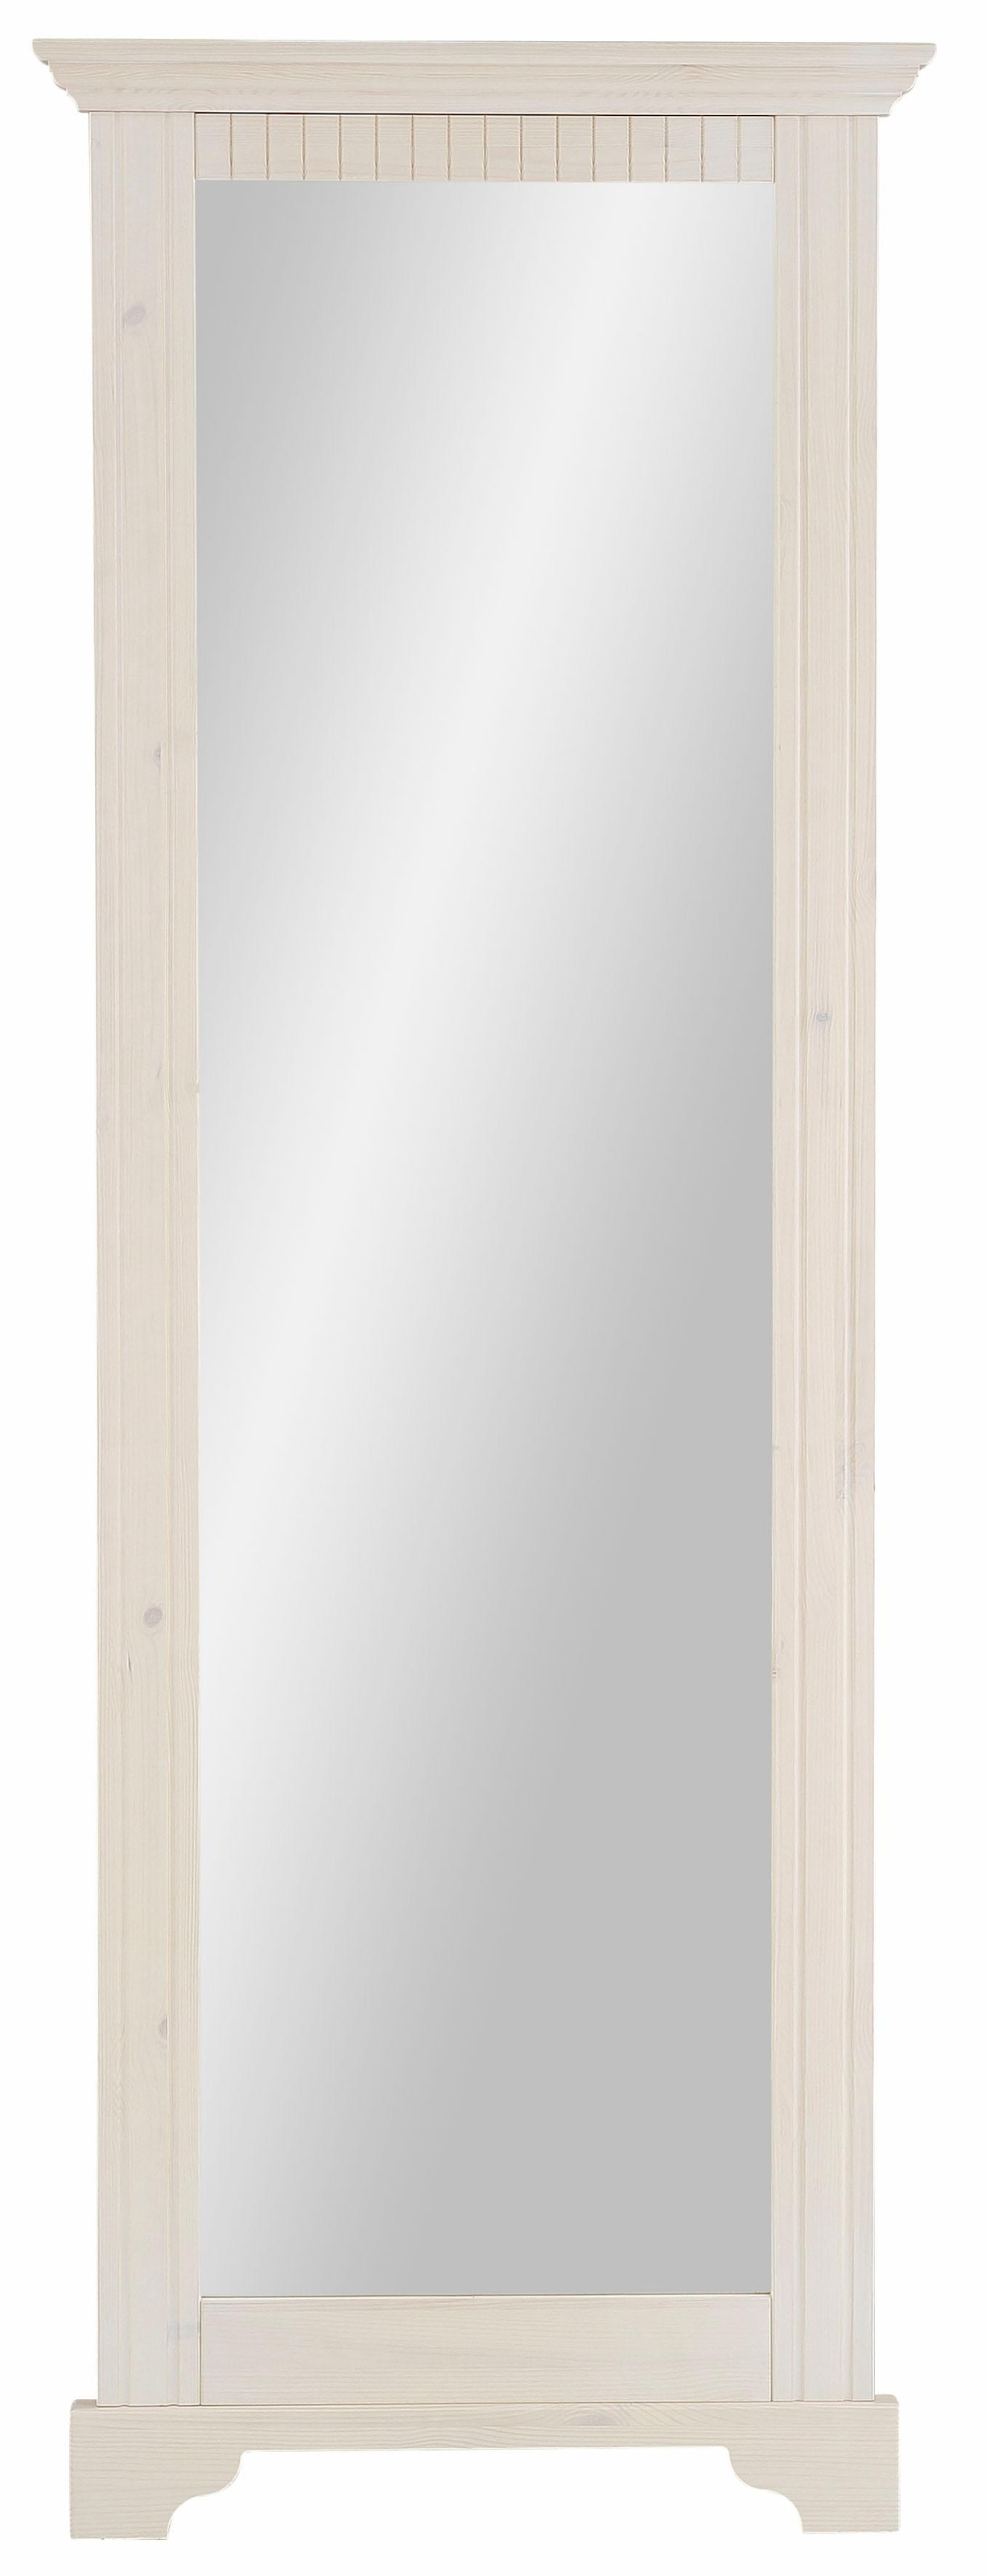 Spiegel »Rustic«, mit Rahmen aus massiver Kiefer, FSC®-zertifiziert